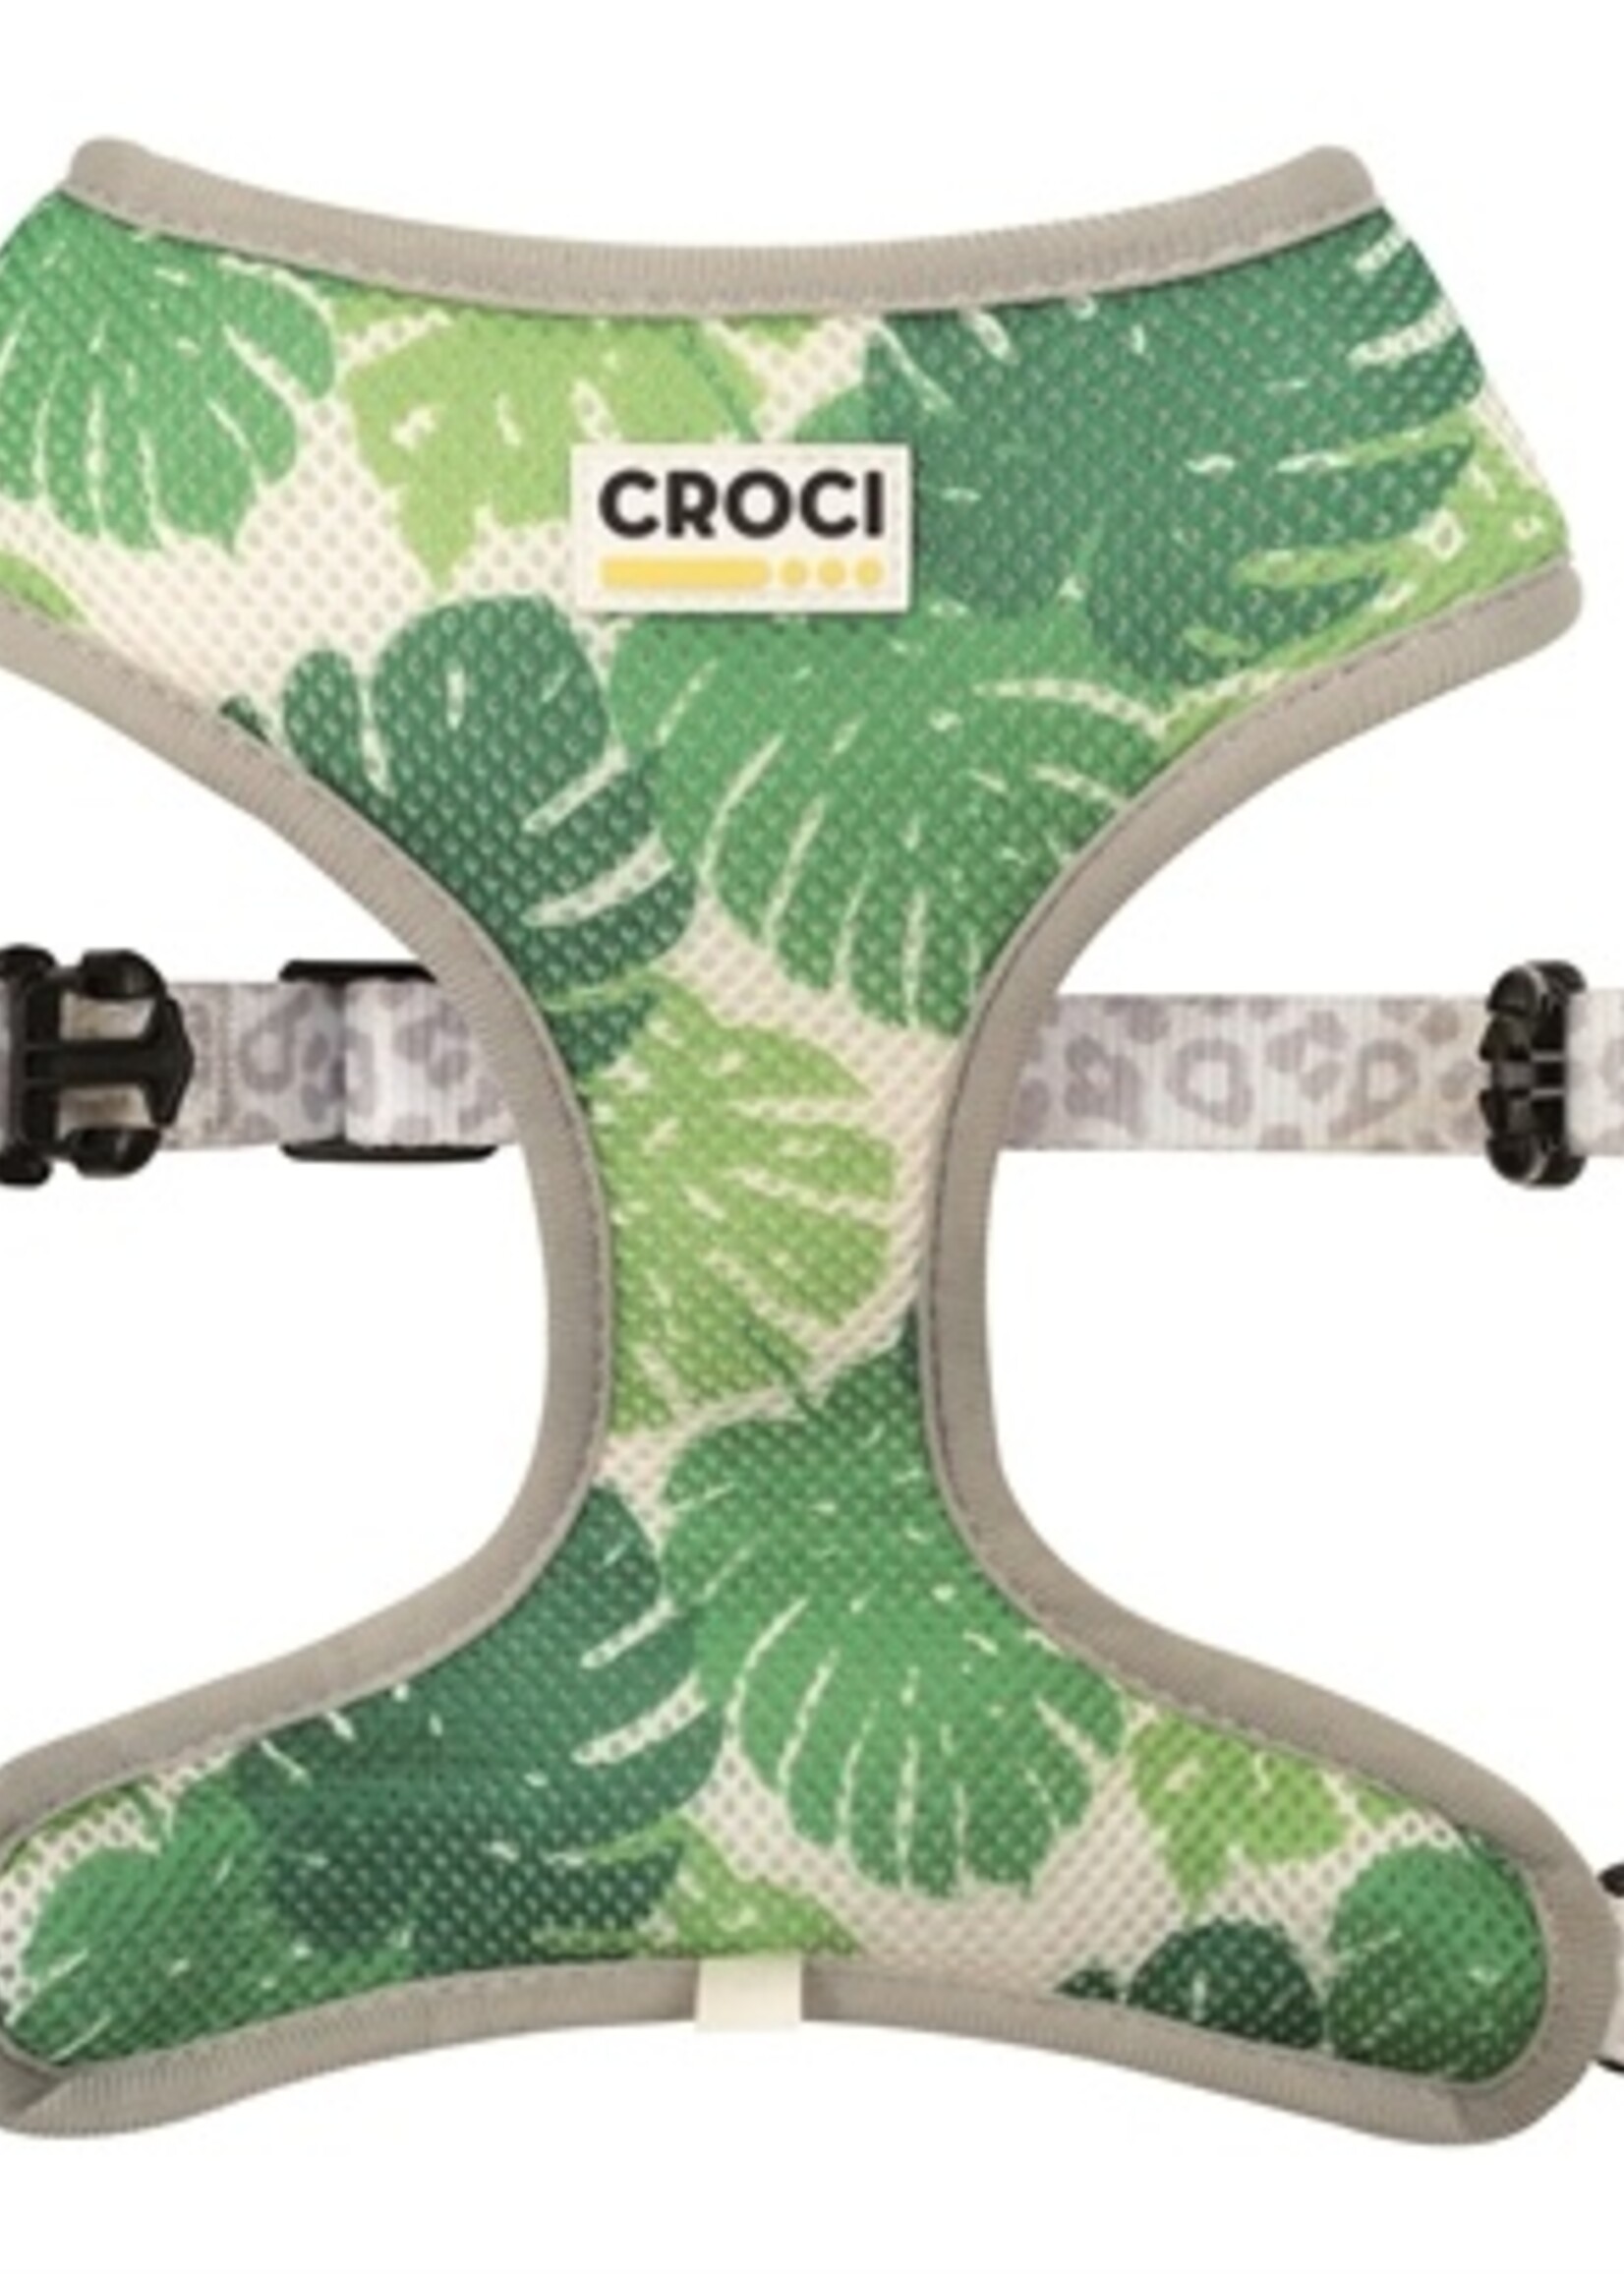 Croci Croci hondentuig luipaard tweezijdig grijs / groen